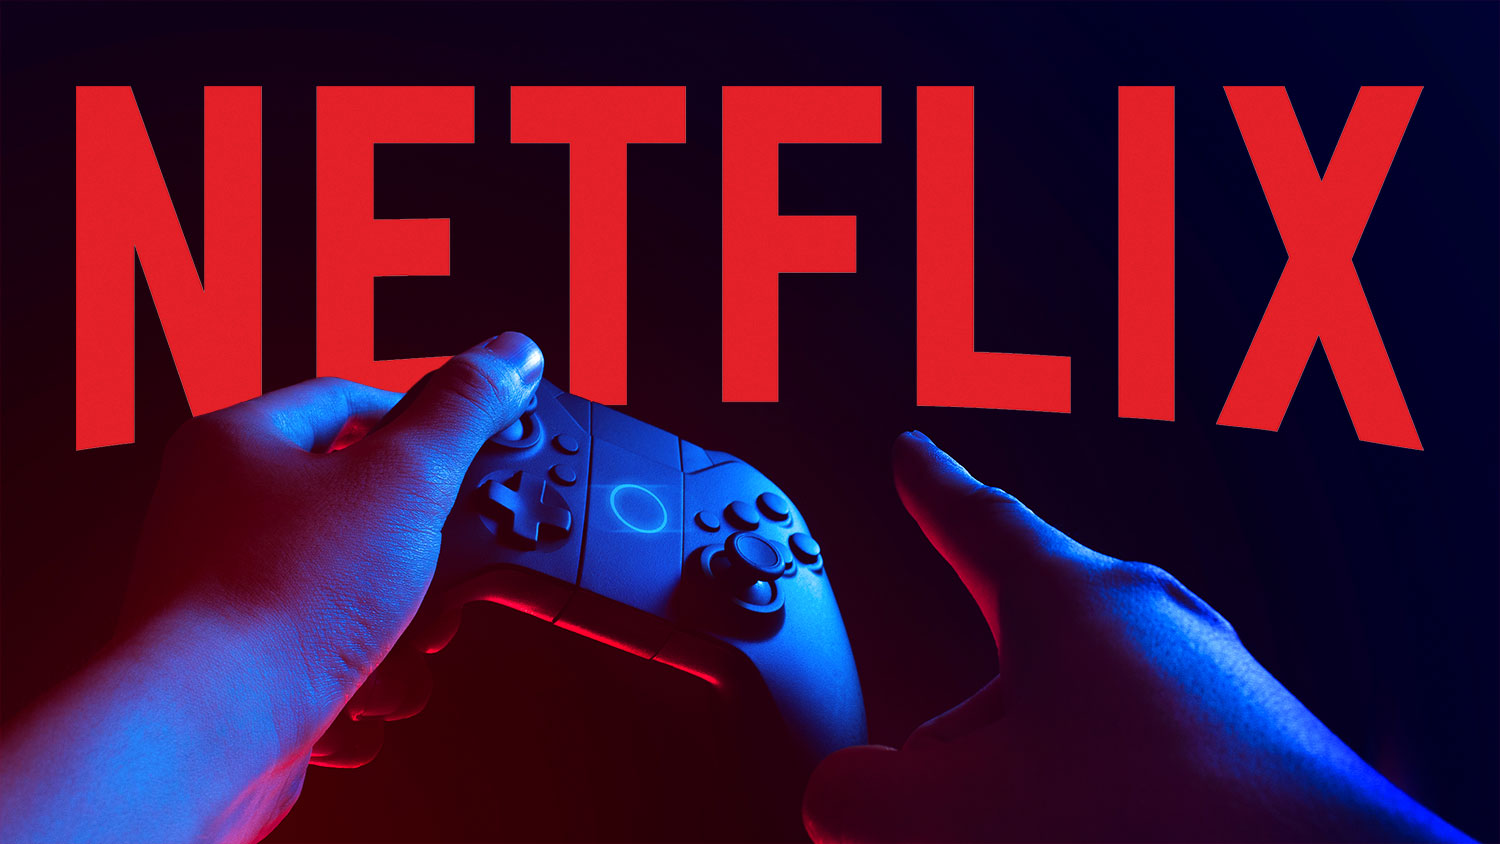 Netflix Gaming commence des tests limités en Pologne avec deux jeux Stranger Things !